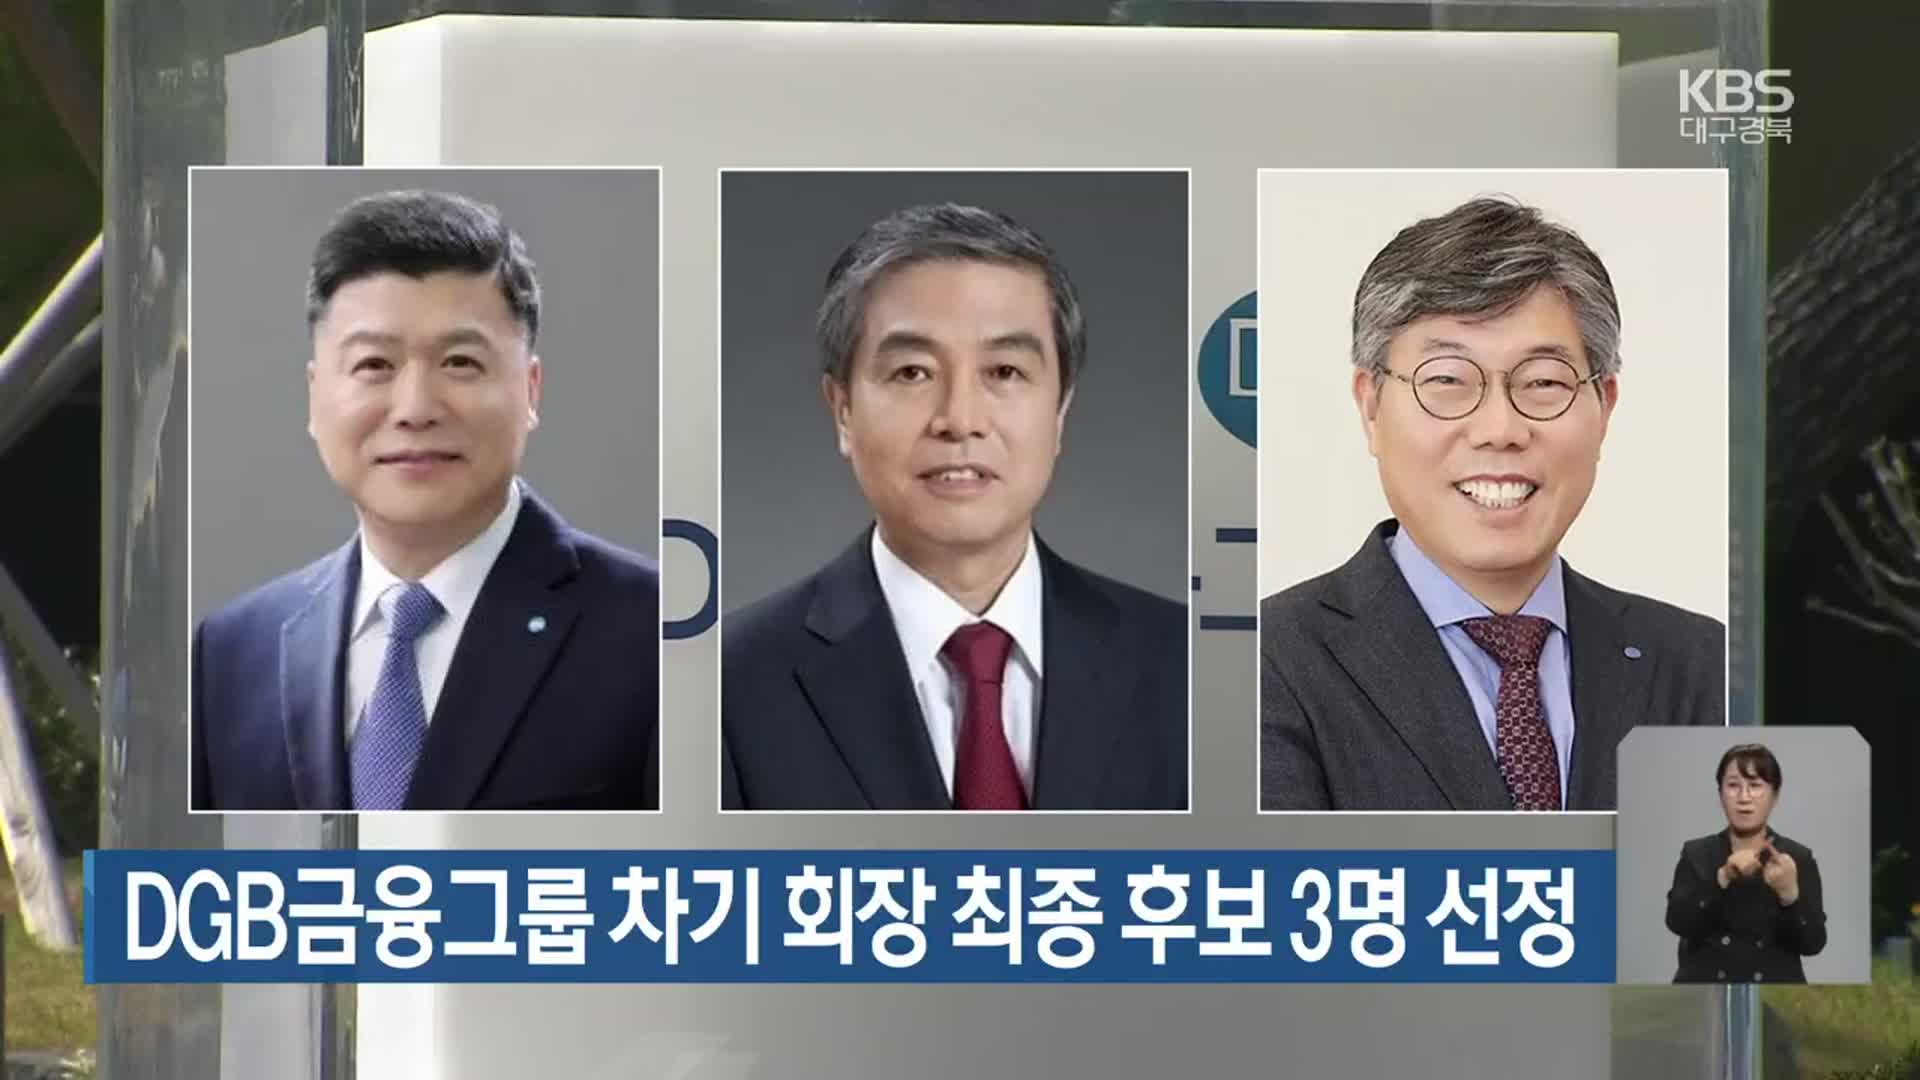 DGB금융그룹 차기 회장 최종 후보 3명 선정